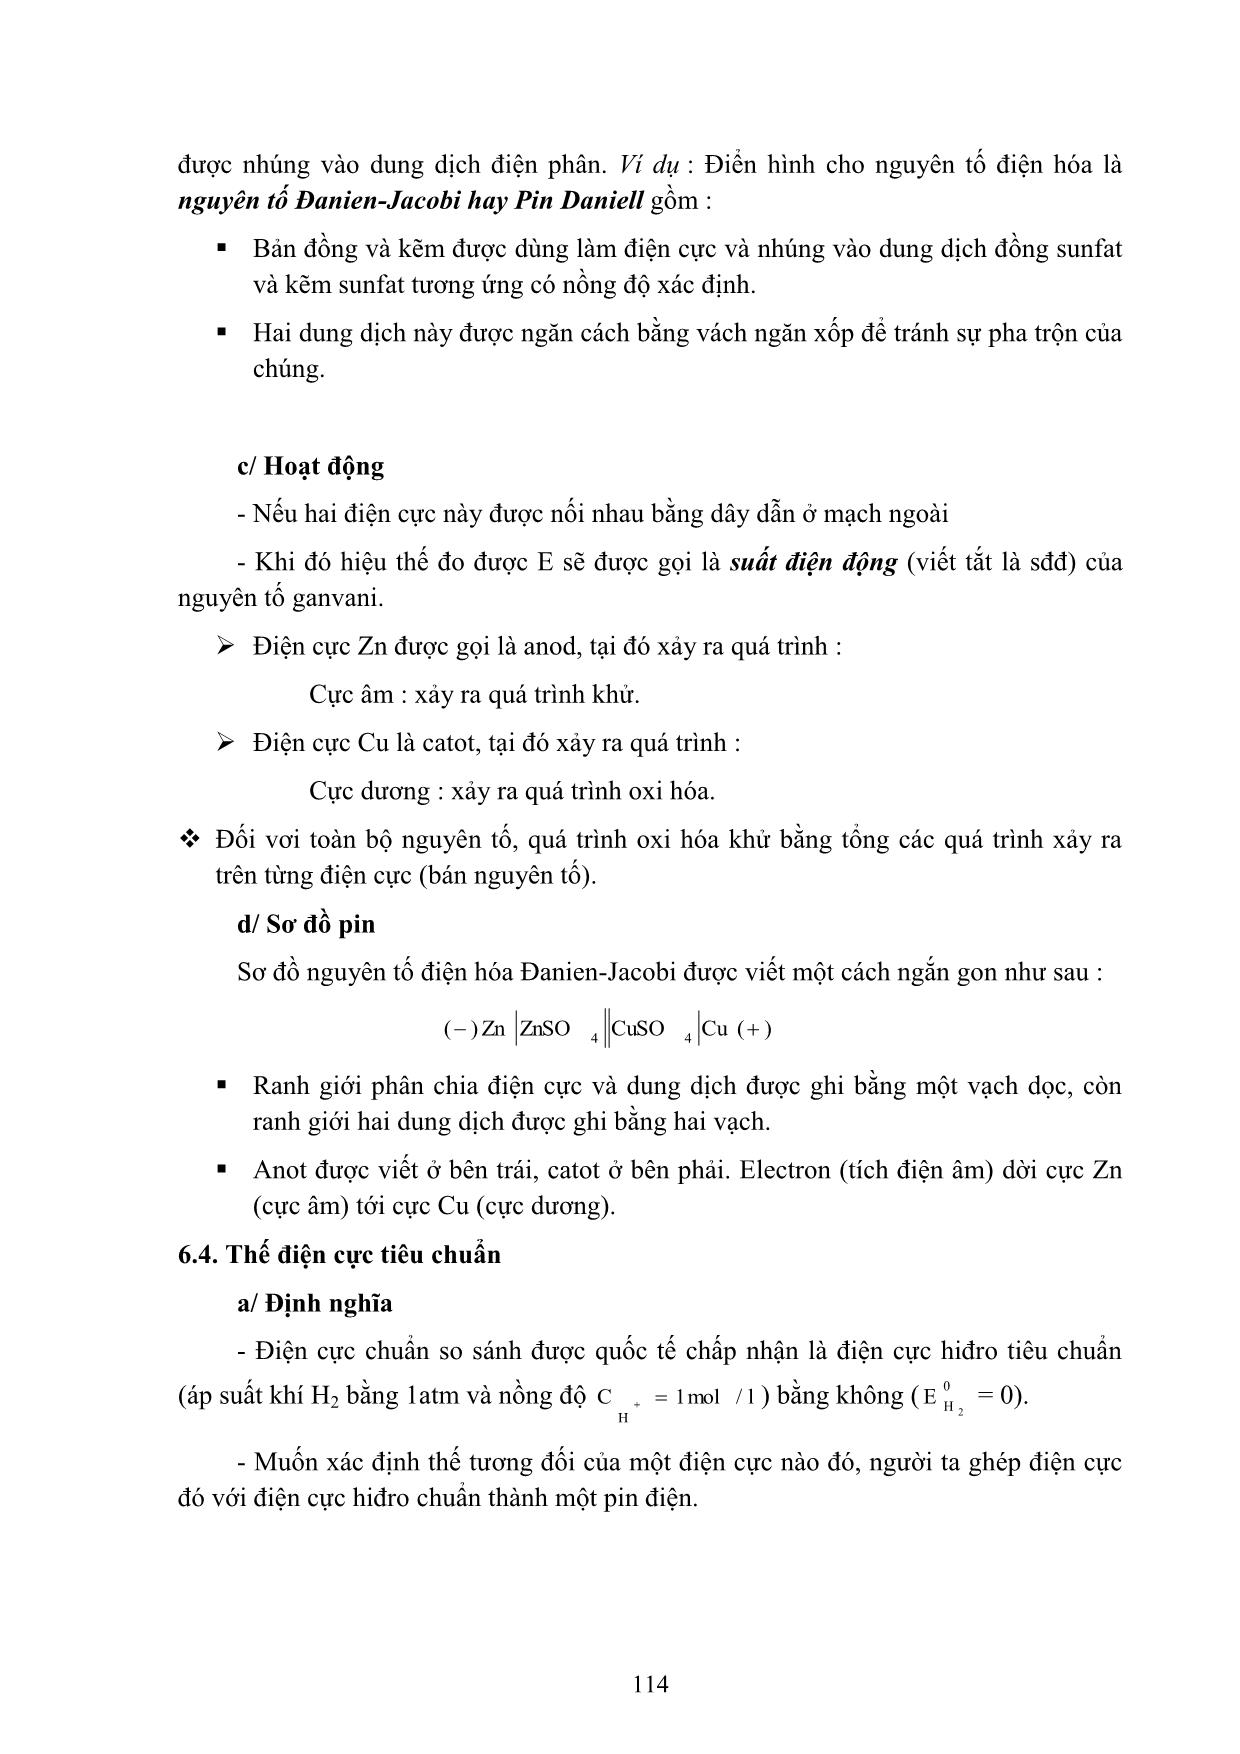 Bài giảng Hóa học đại cương A - Hoàng Hải Hậu (Phần 2) trang 7